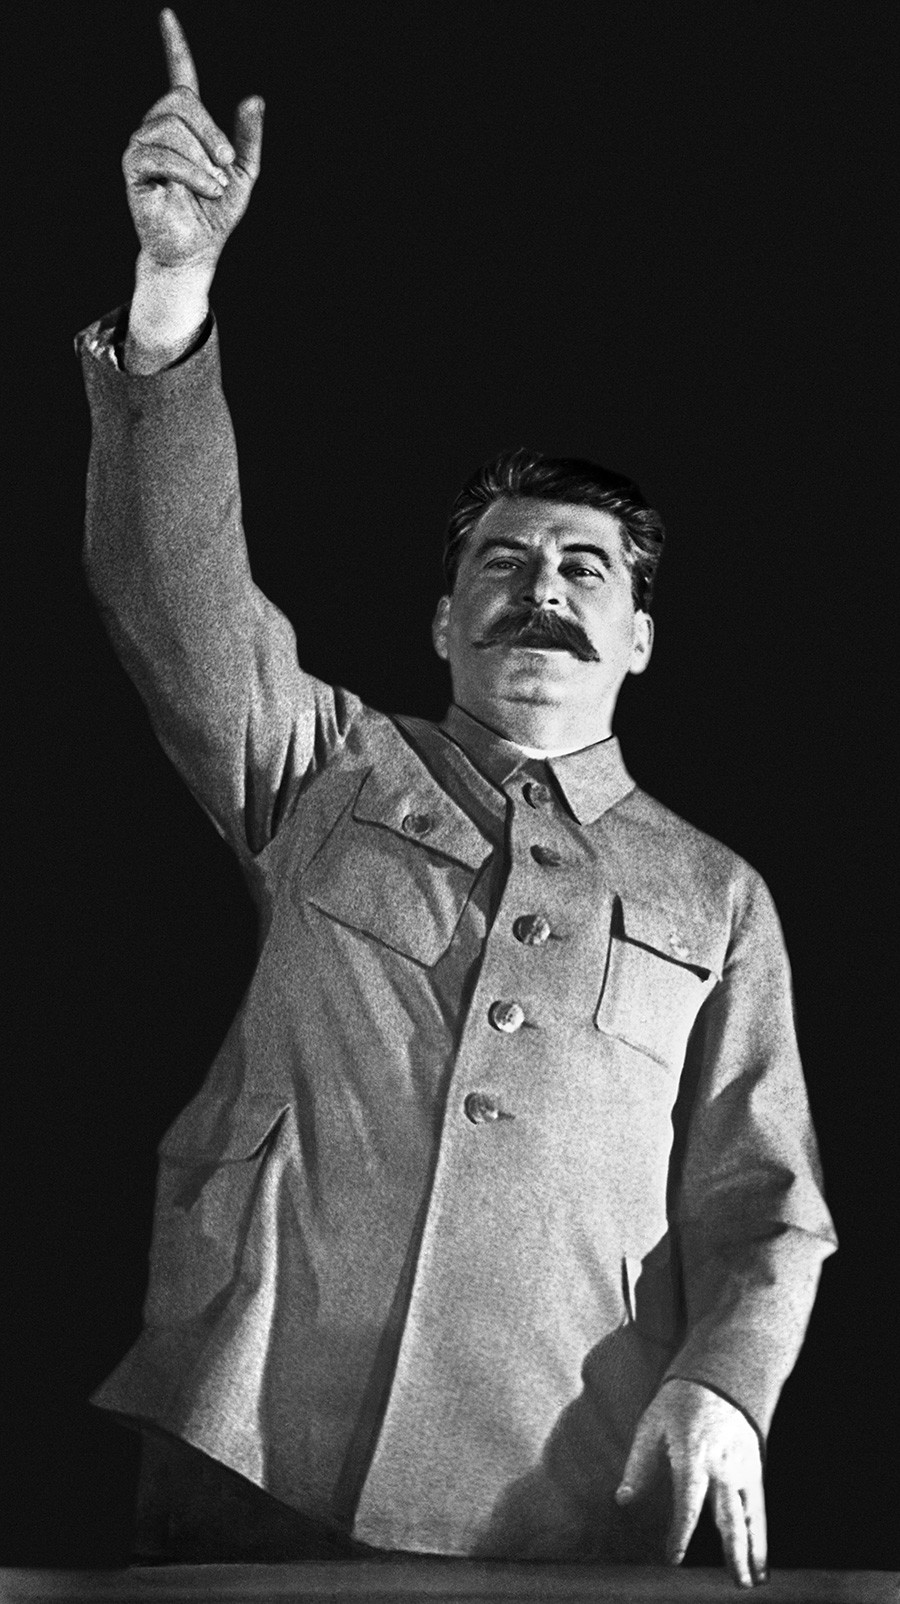 An official portrait of Joseph Stalin